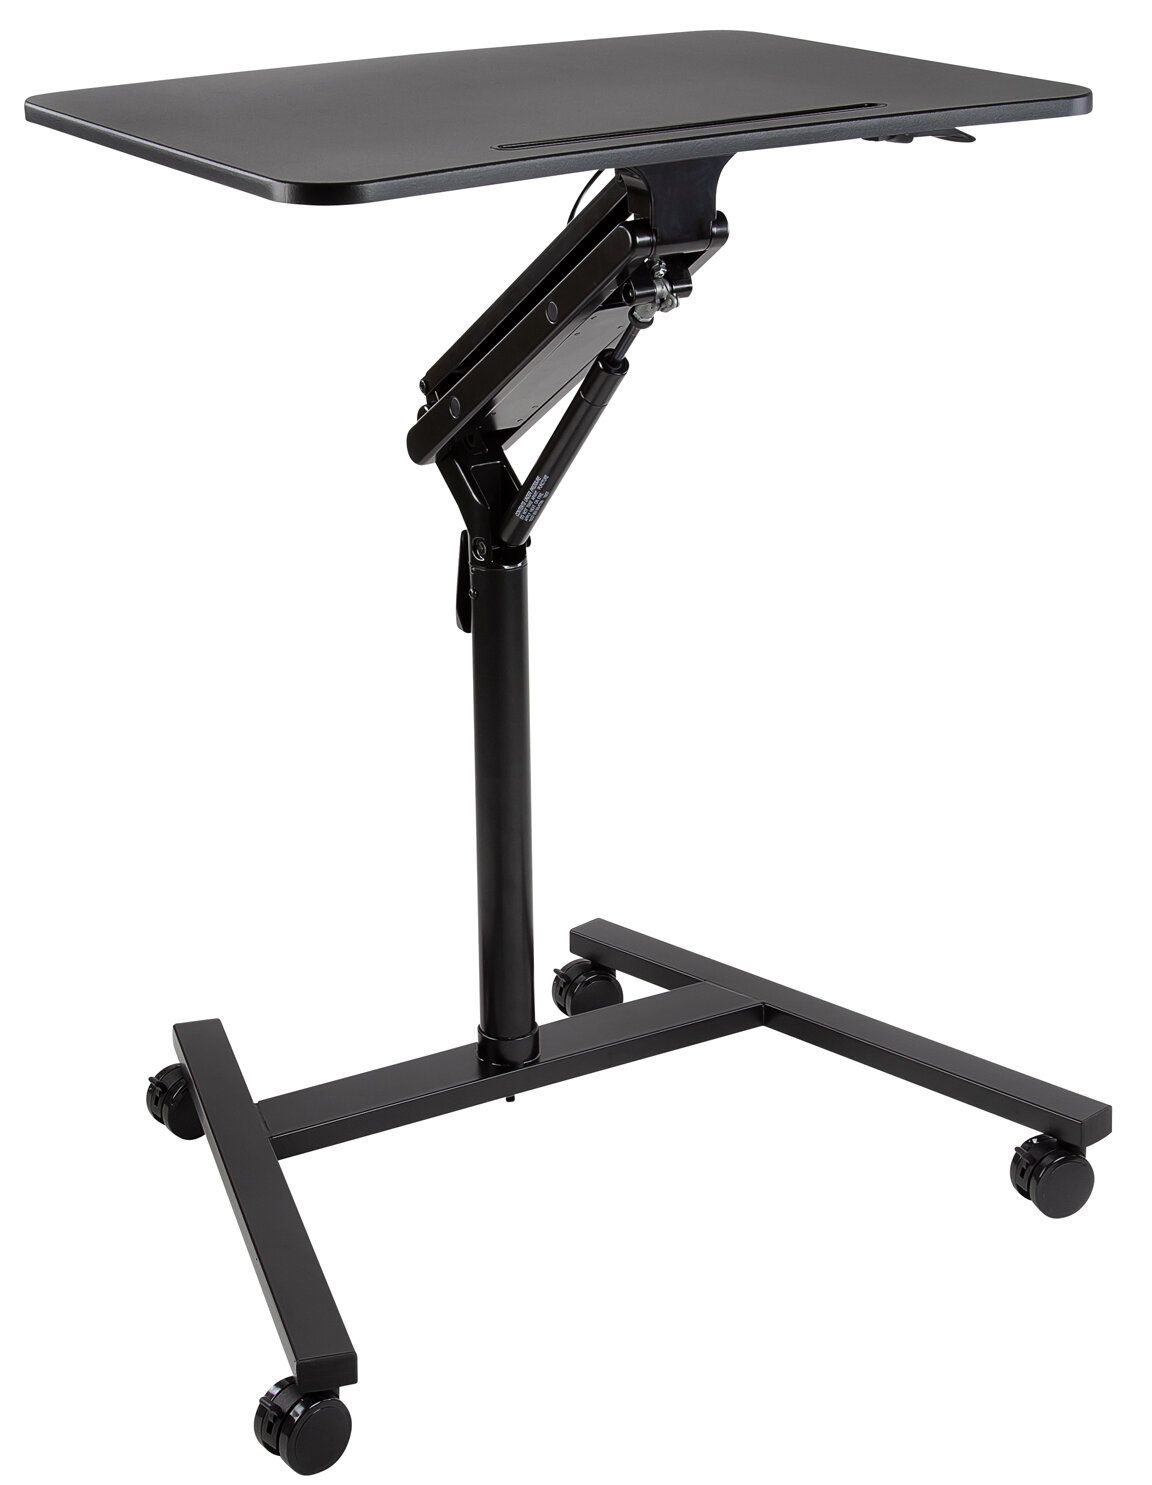 https://assets.wfcdn.com/im/36502459/compr-r85/6630/66305289/mount-it-mobile-standing-laptop-desk-height-adjustable-rolling-sit-stand-workstation.jpg